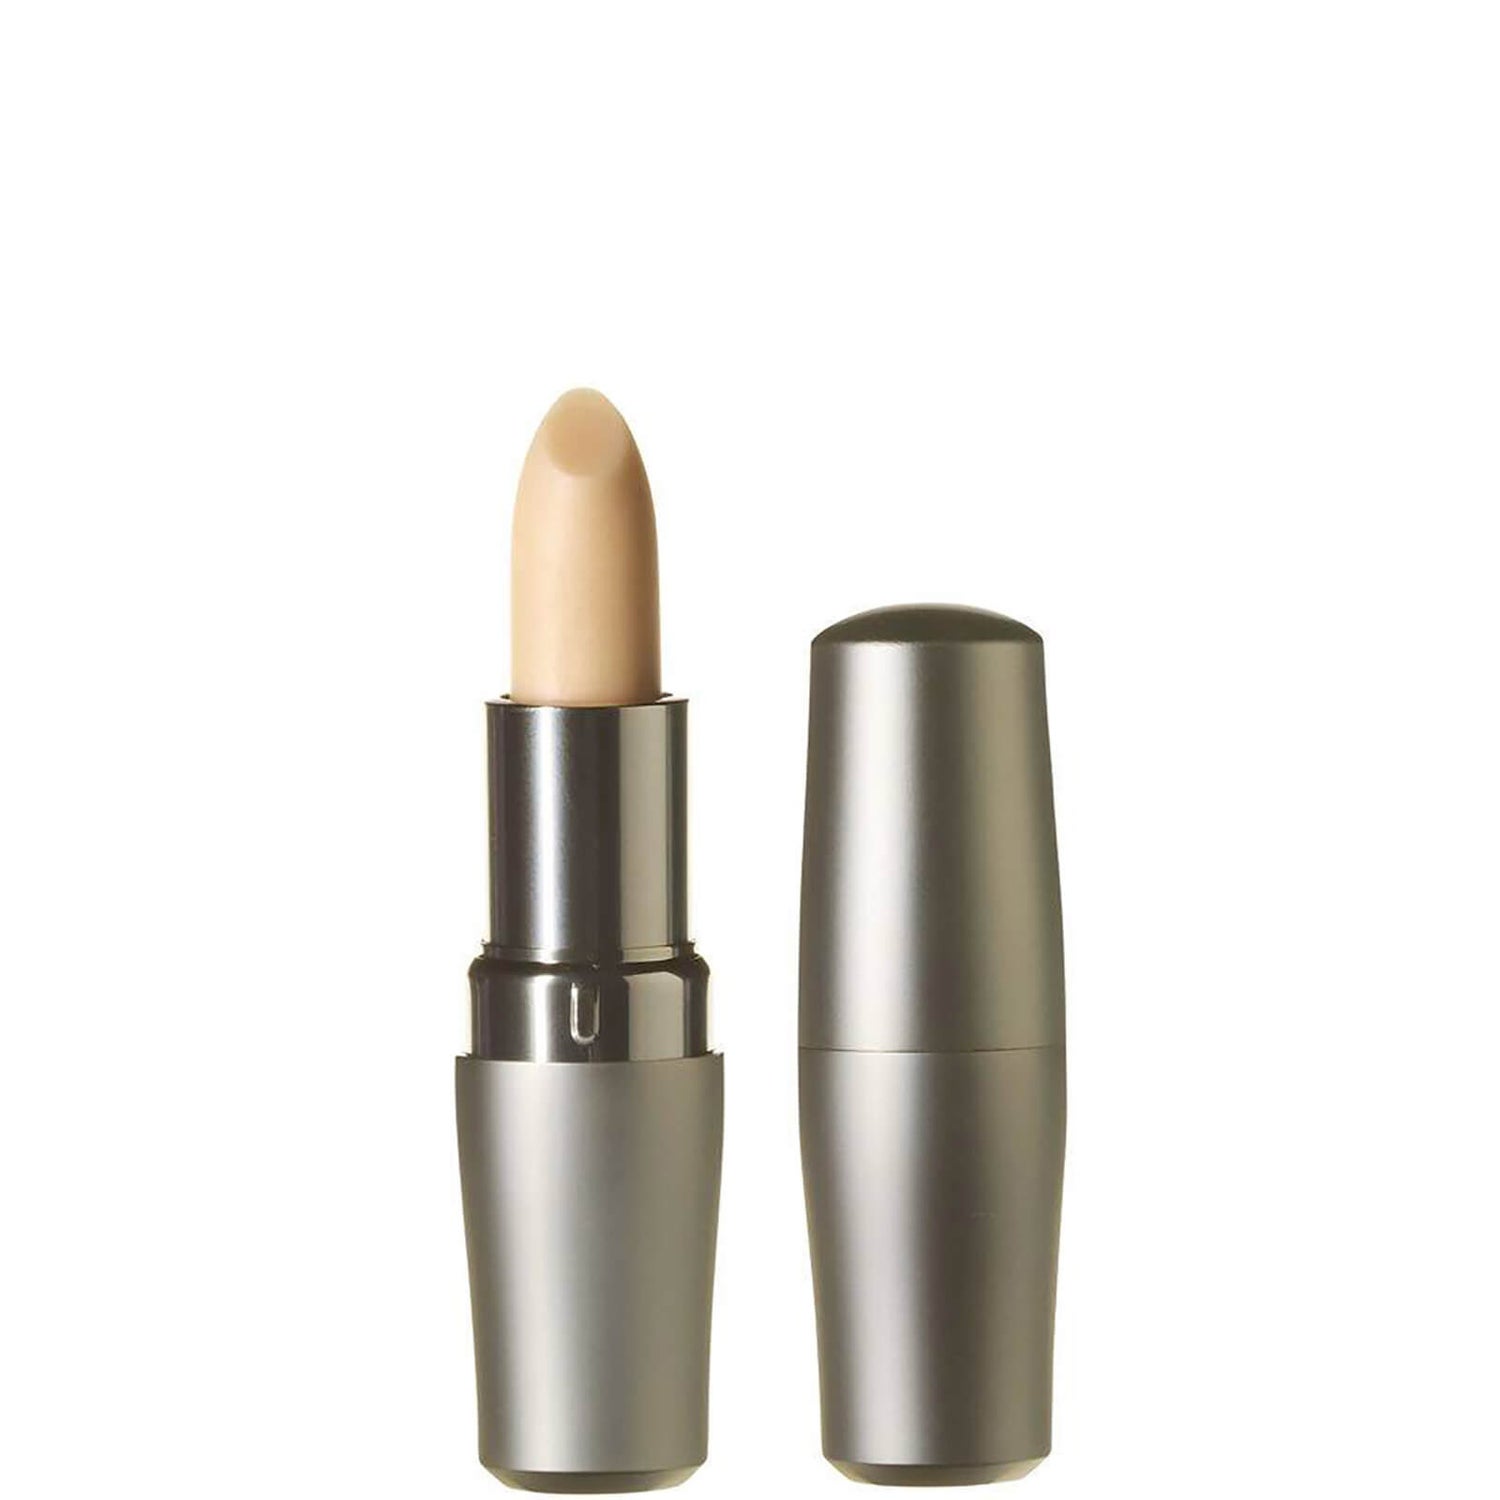 Hidratante protector de labios Shiseido The Skincare Essentials (4g)